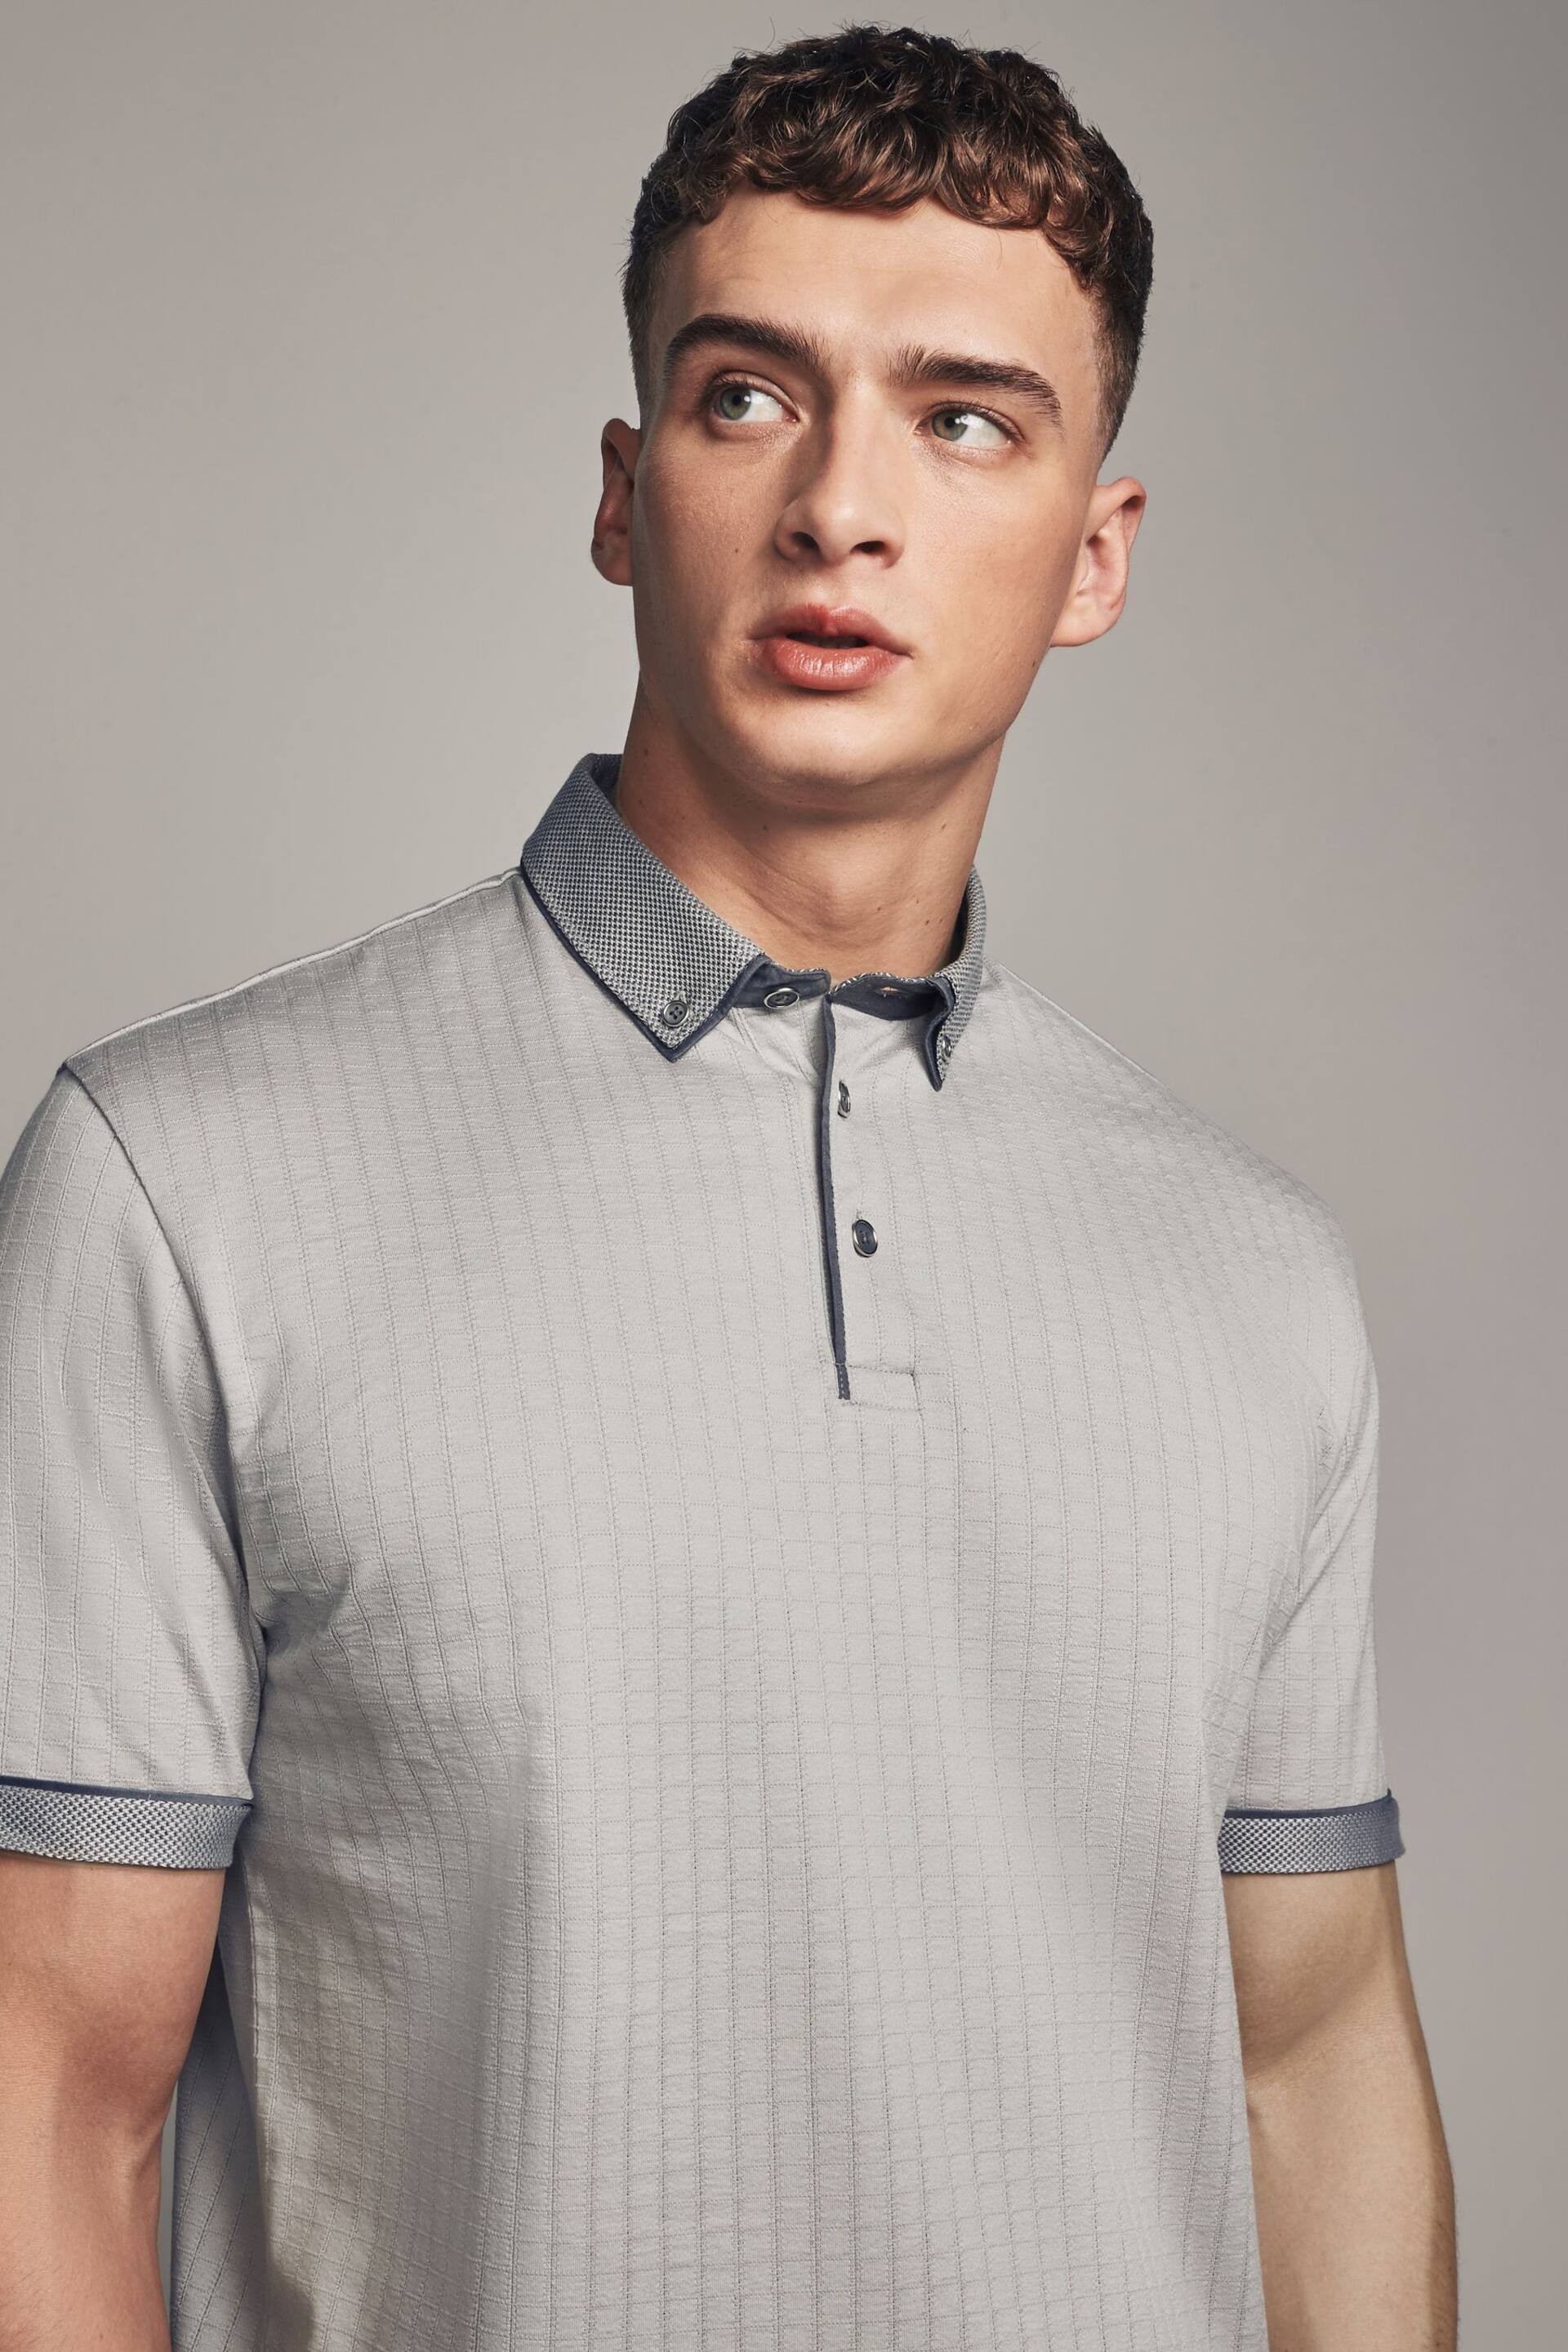 Grey Smart Collar Polo Shirt - Image 1 of 10